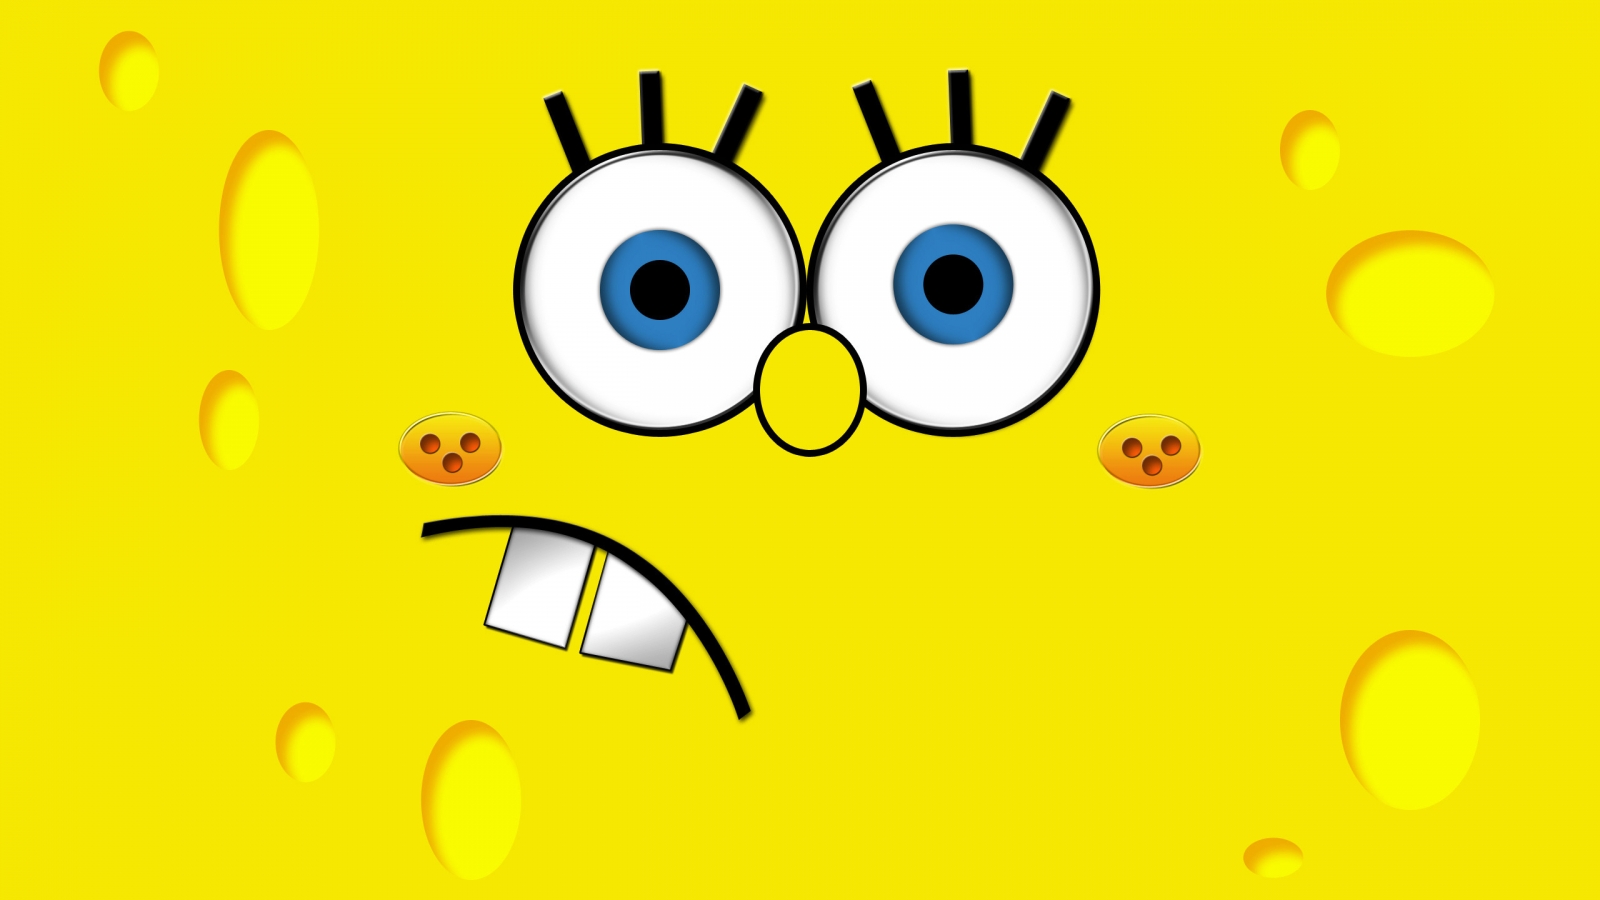 SpongeBob for 1600 x 900 HDTV resolution